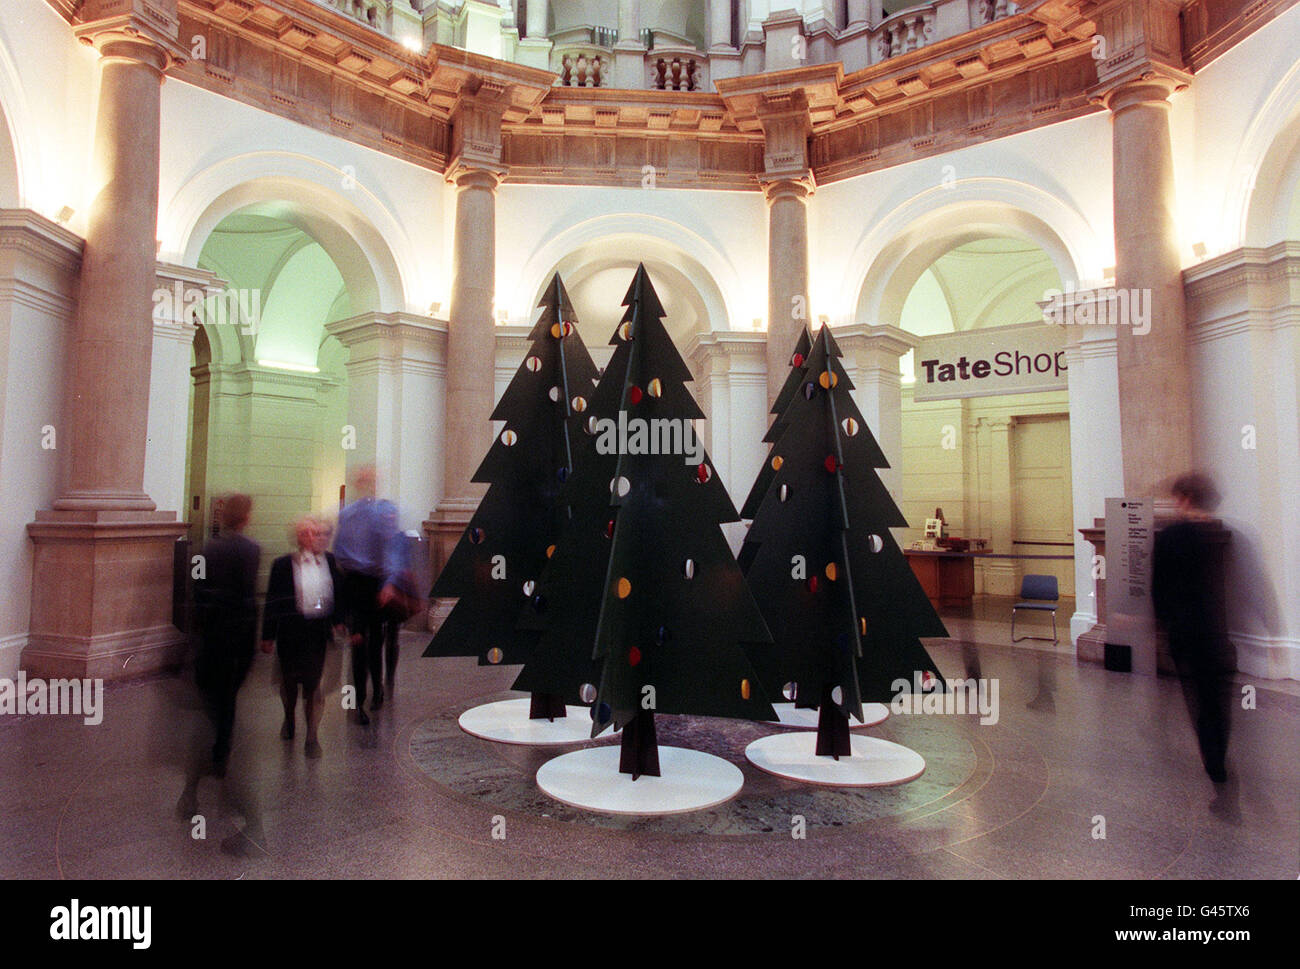 Les membres du public voir un 'forêt' Noël conçu par l'artiste Julian Opie à la Tate Gallery à Londres aujourd'hui (mardi). La galerie a rompu avec la tradition d'avoir un seul arbre à l'écran en montrant les arbres de Noël dans la rotonde. Photo de Fiona Hanson/PA. Banque D'Images